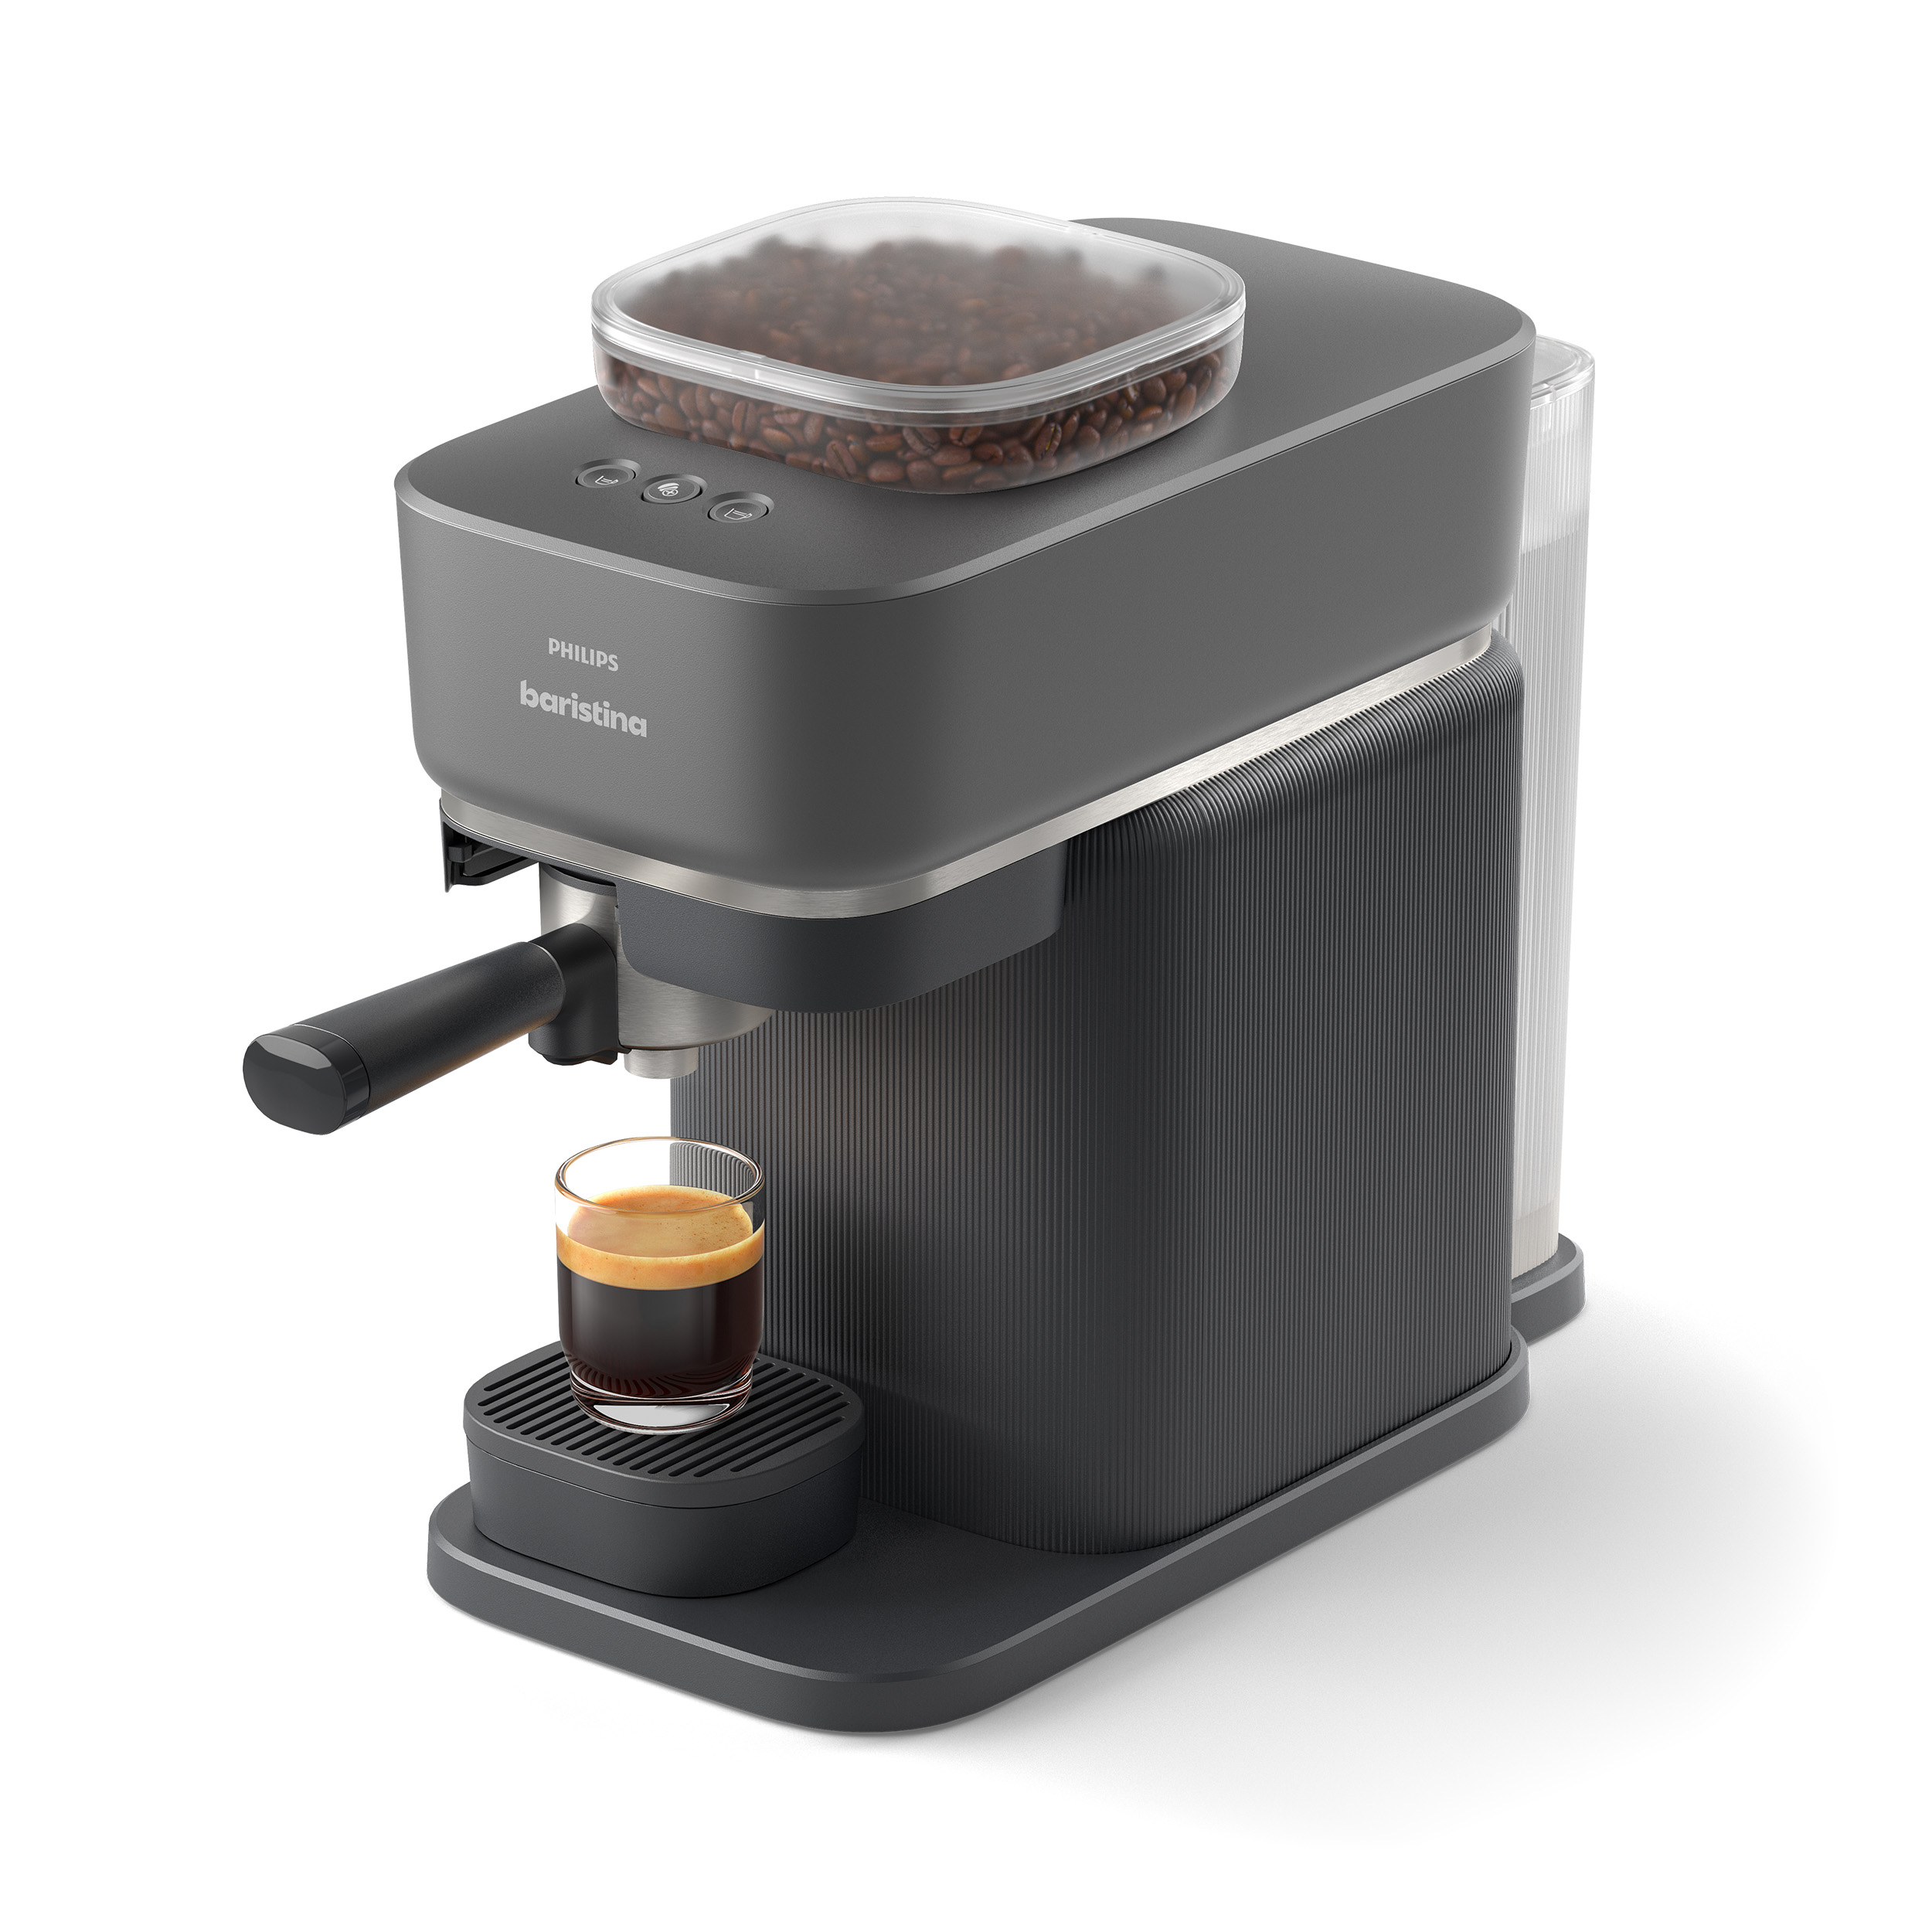 PHILIPS baristina Espressomaschine »Baristina BAR300/60 mit Mahlwerk für ga günstig online kaufen